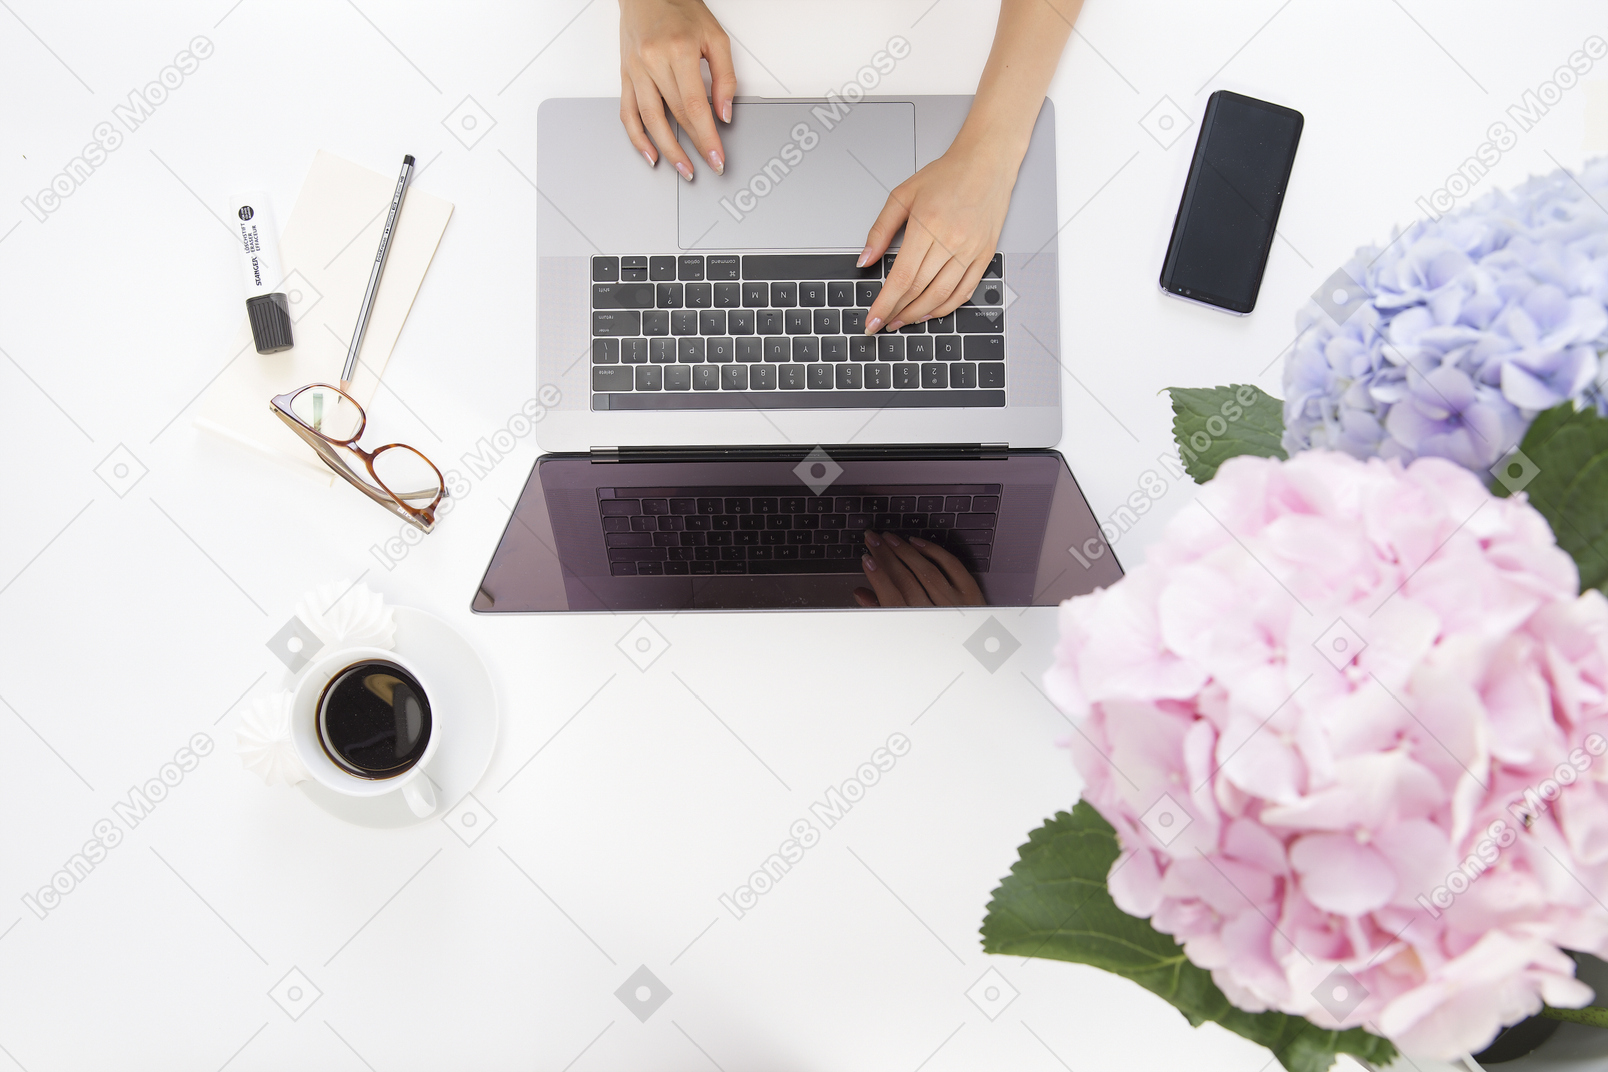 Weibliche hände, die auf dem laptop schreiben